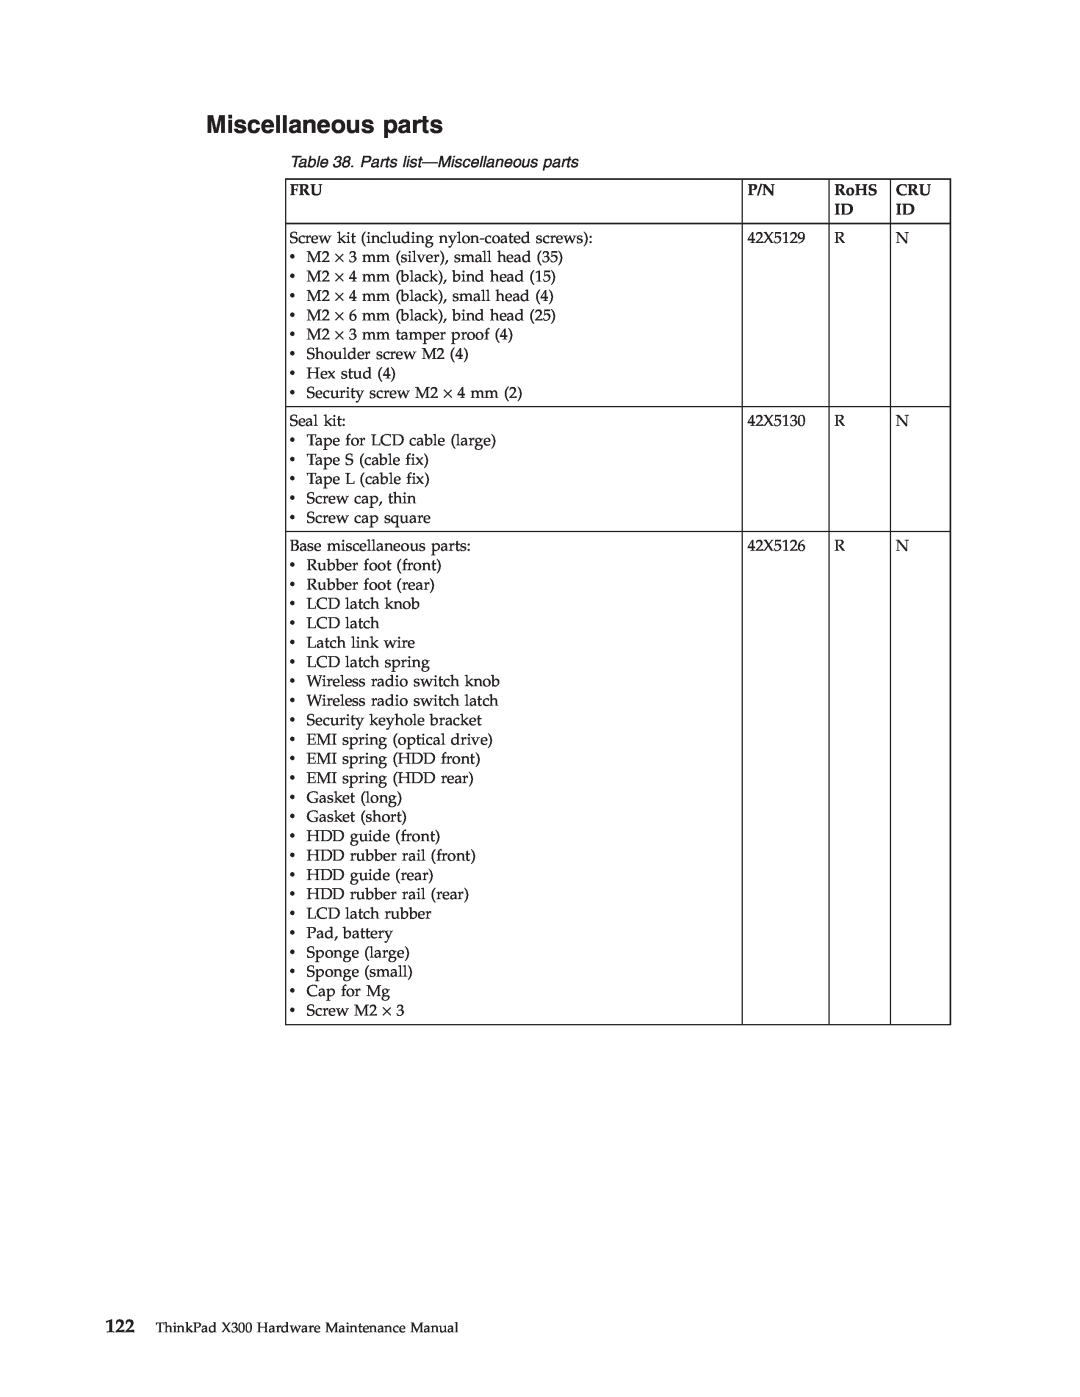 Lenovo X300 manual Parts list-Miscellaneous parts 